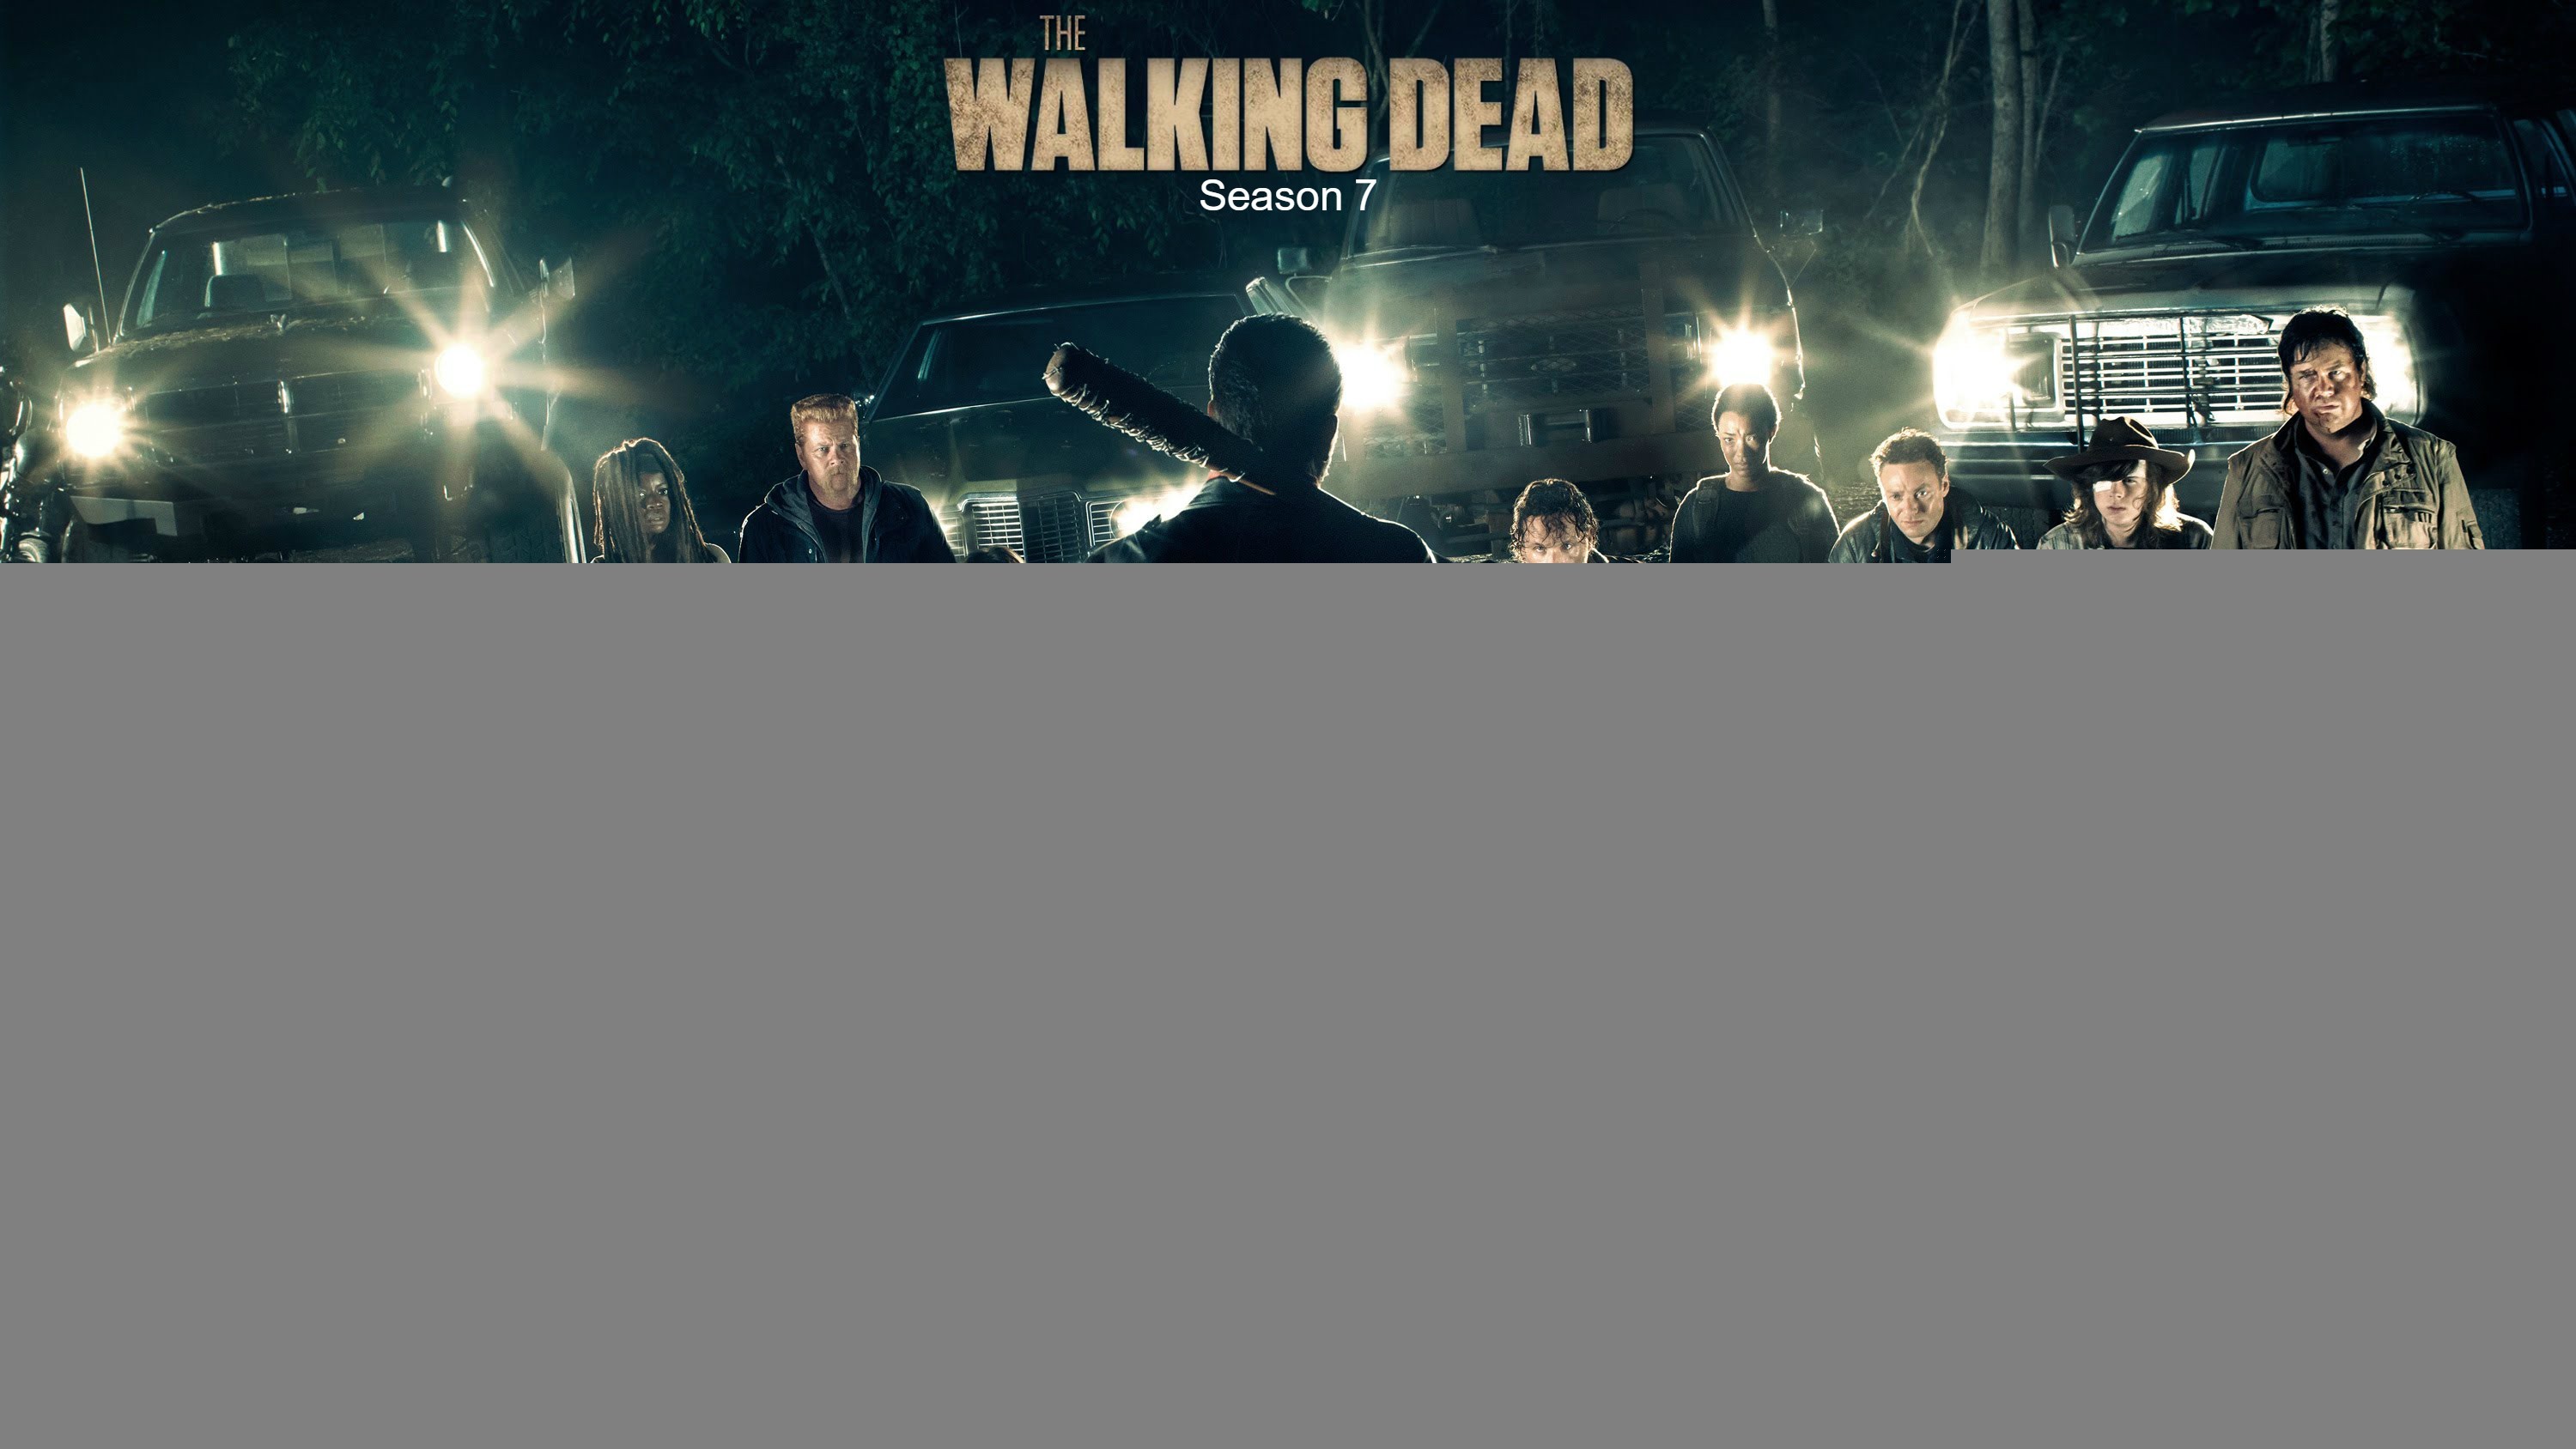 The Walking Dead Wallpaper For Android 50 
 Data Src - Walking Dead Season 7 Poster - HD Wallpaper 